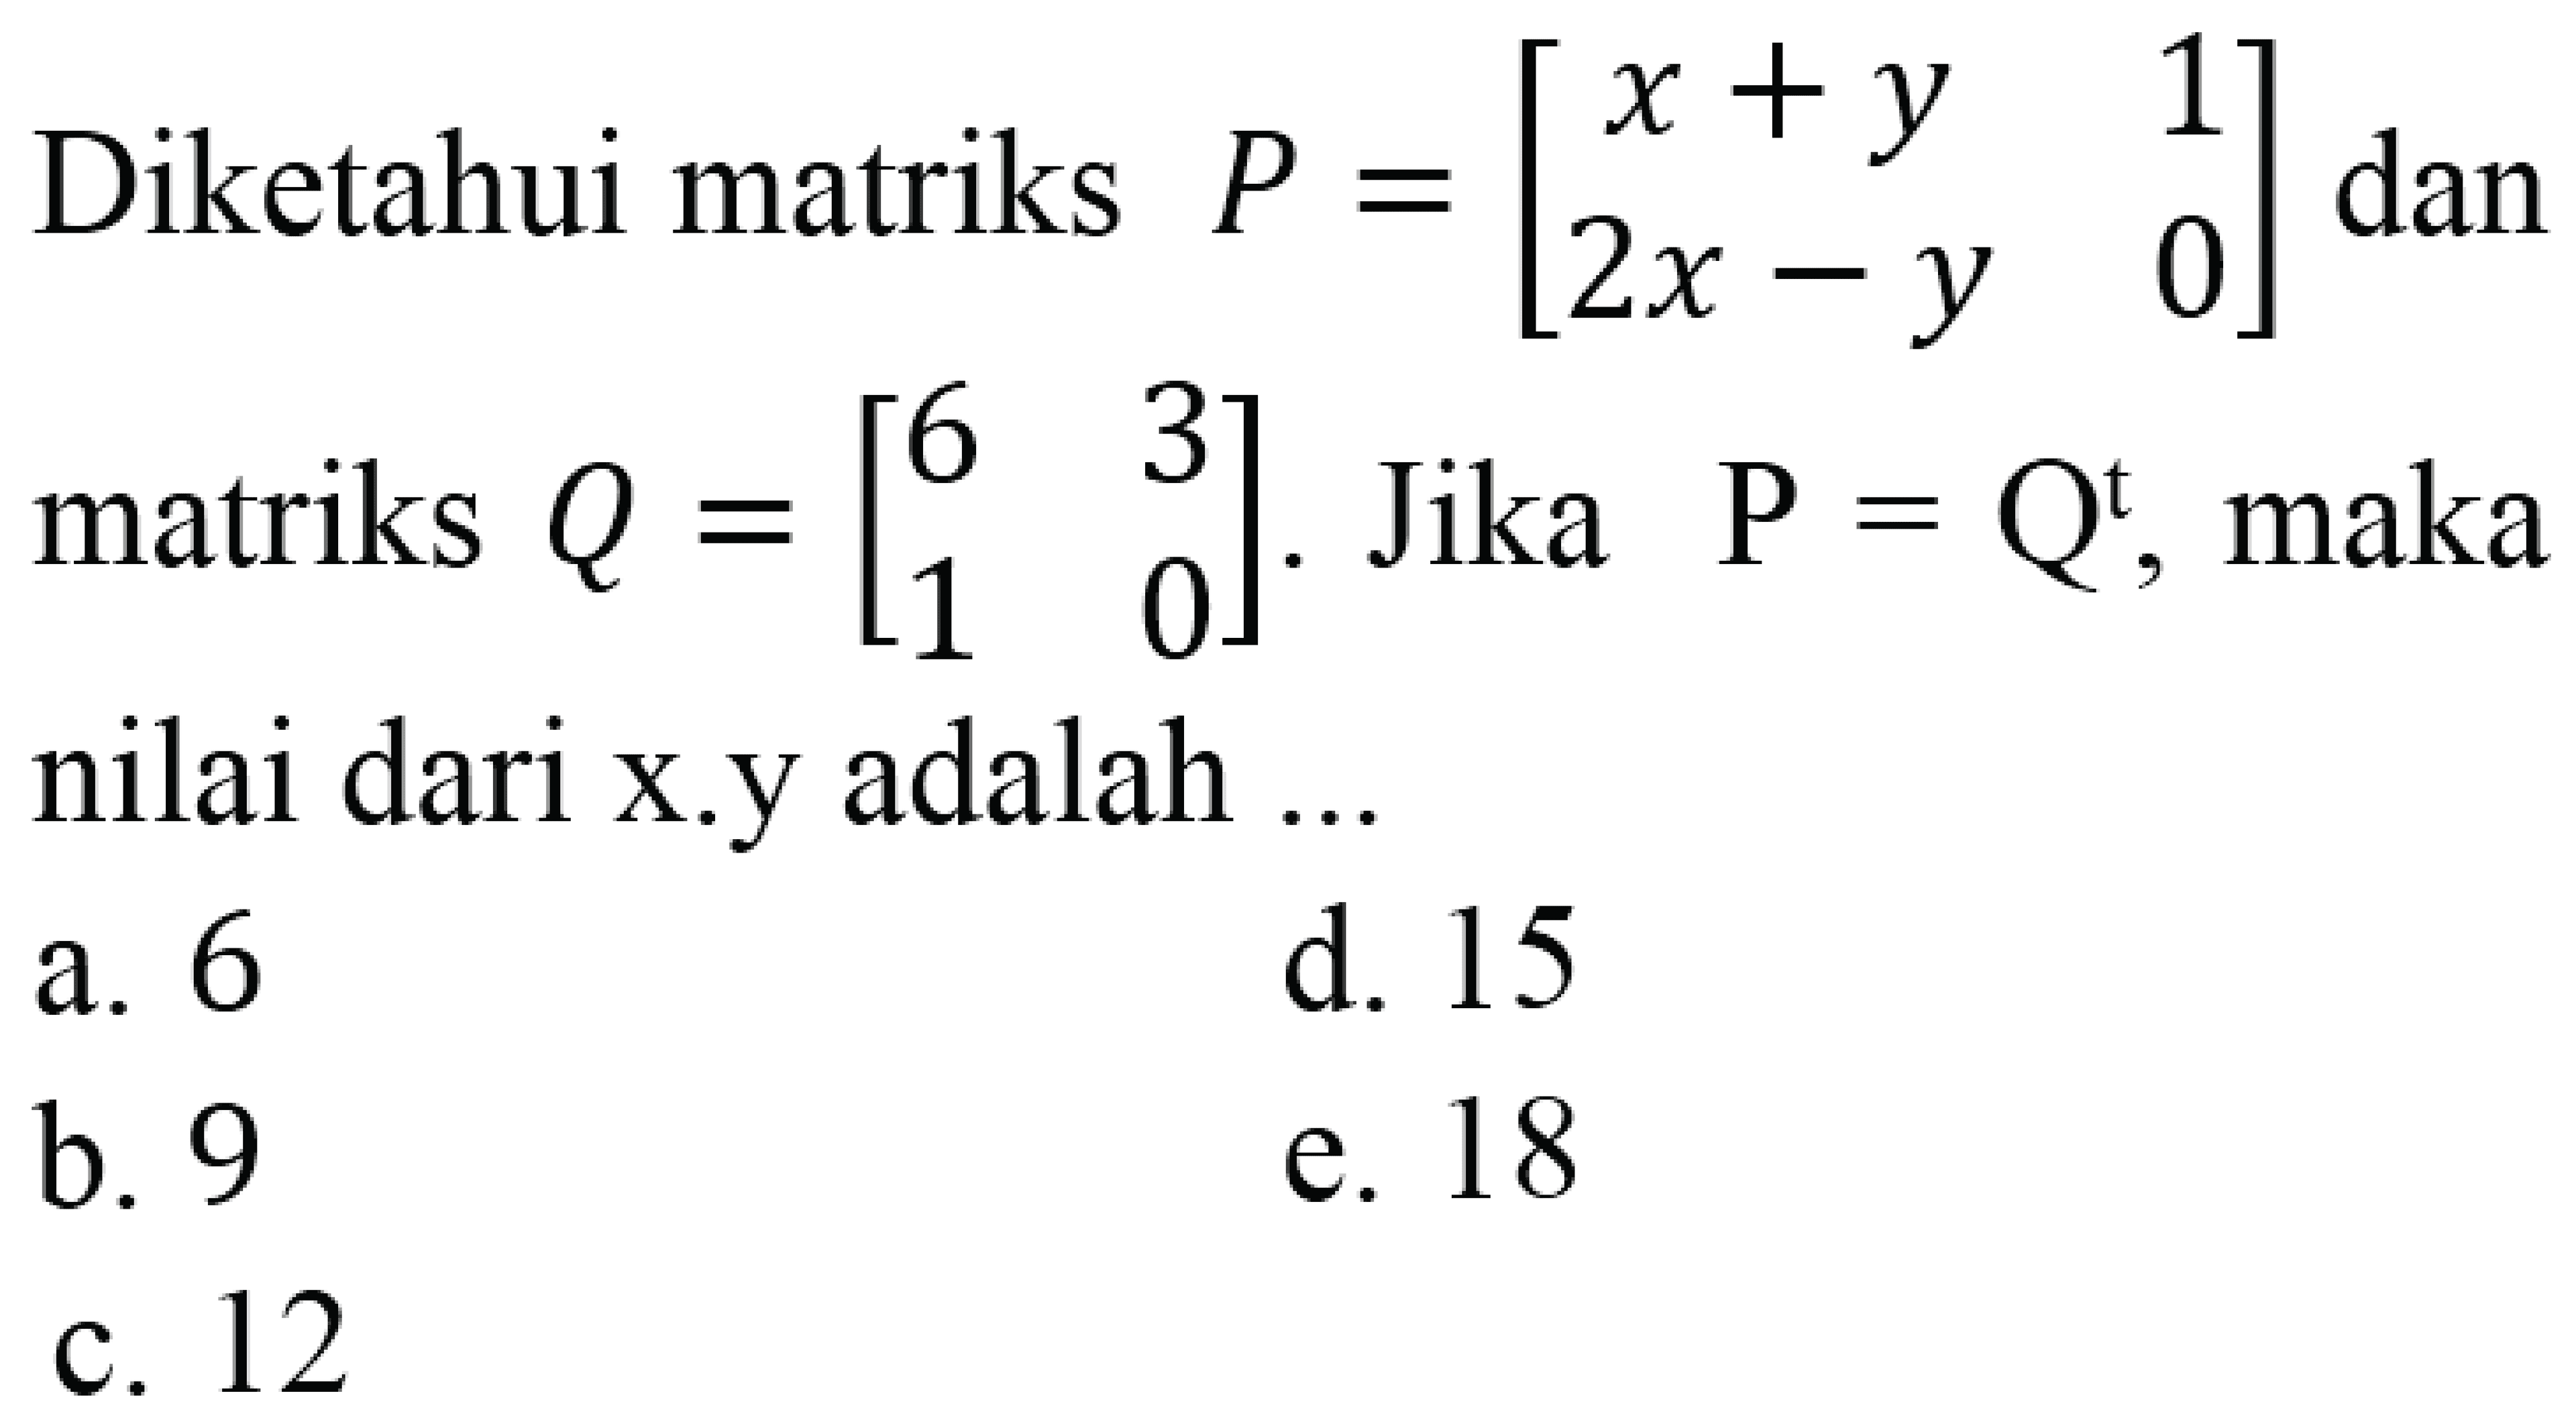 Diketahui matriks  P=[x+y 1 2x-y 0]  dan matriks  Q=[6 3 1 0] . Jika  P=Q^t , maka nilai dari x.y adalah ...